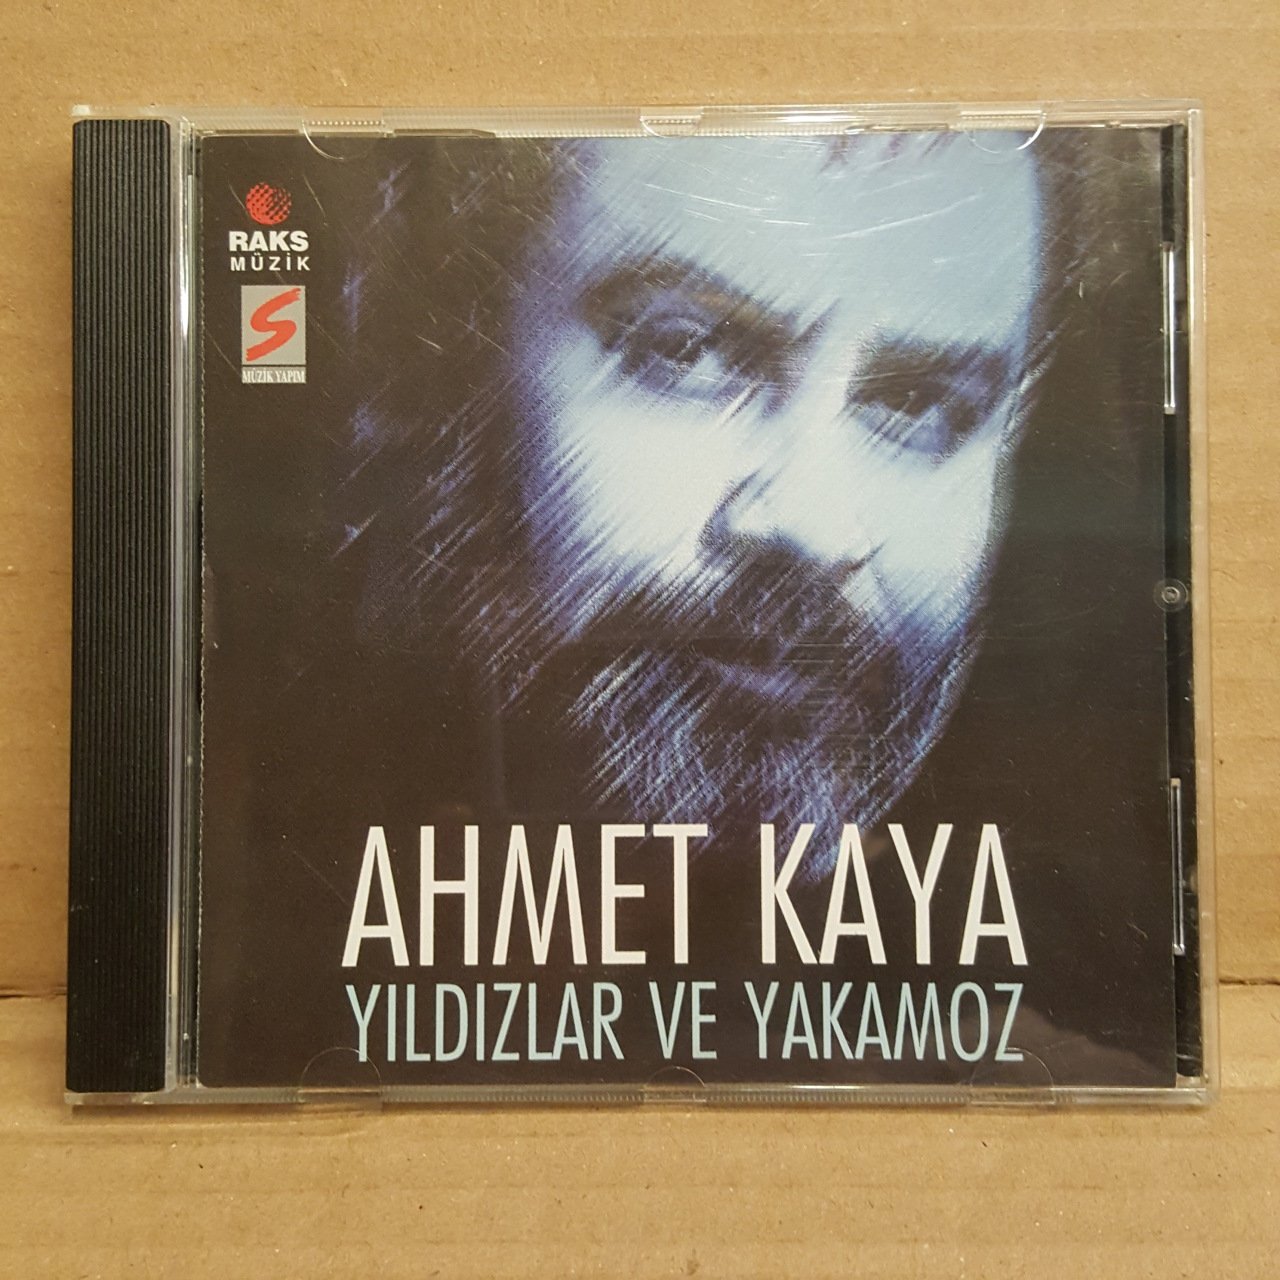 AHMET KAYA - YILDIZLAR VE YAKAMOZ (1995) - CD RAKS BASIM ESKİ METALİK BANDROL 2.EL